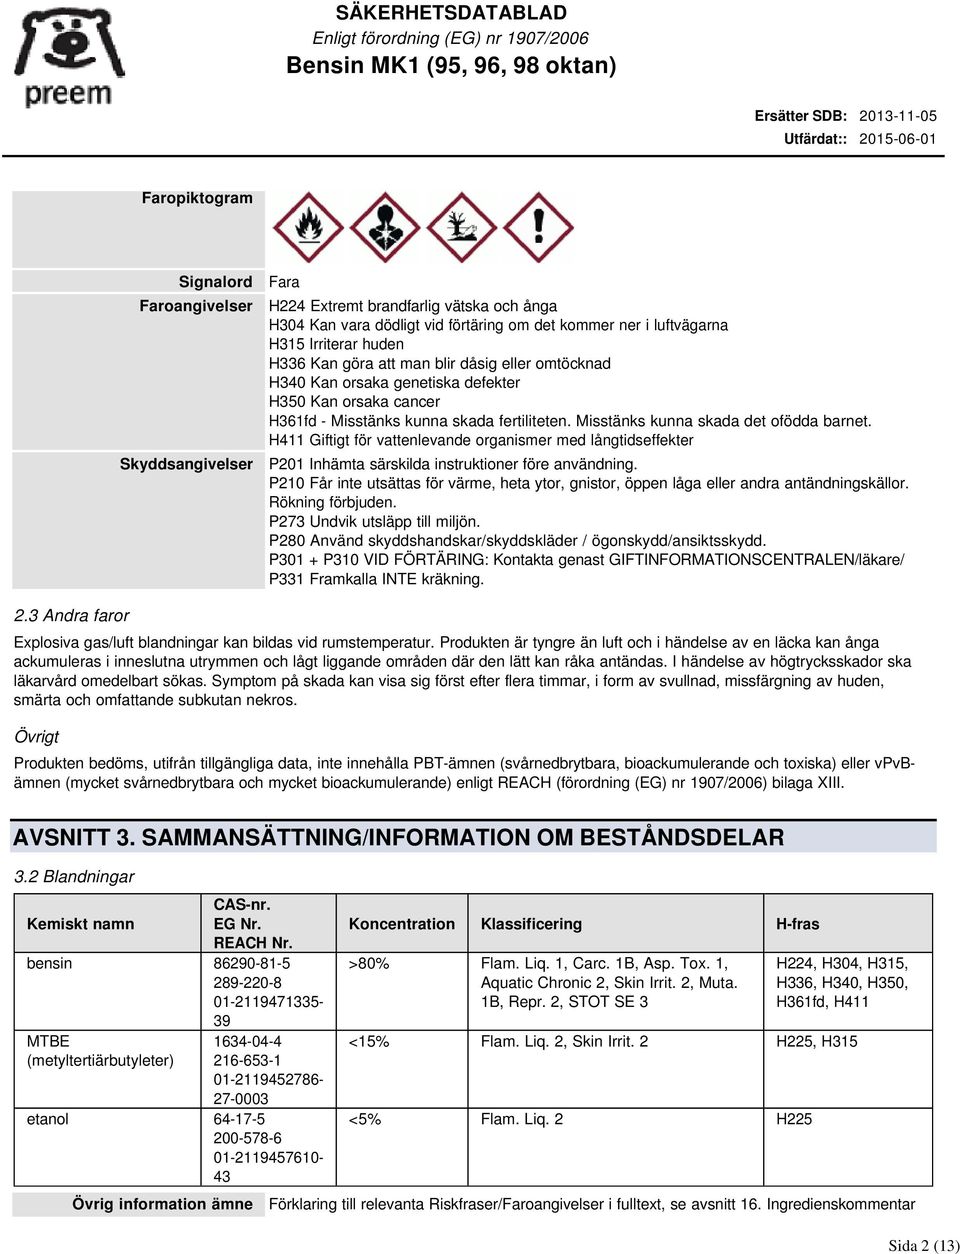 H411 Giftigt för vattenlevande organismer med långtidseffekter P201 Inhämta särskilda instruktioner före användning.